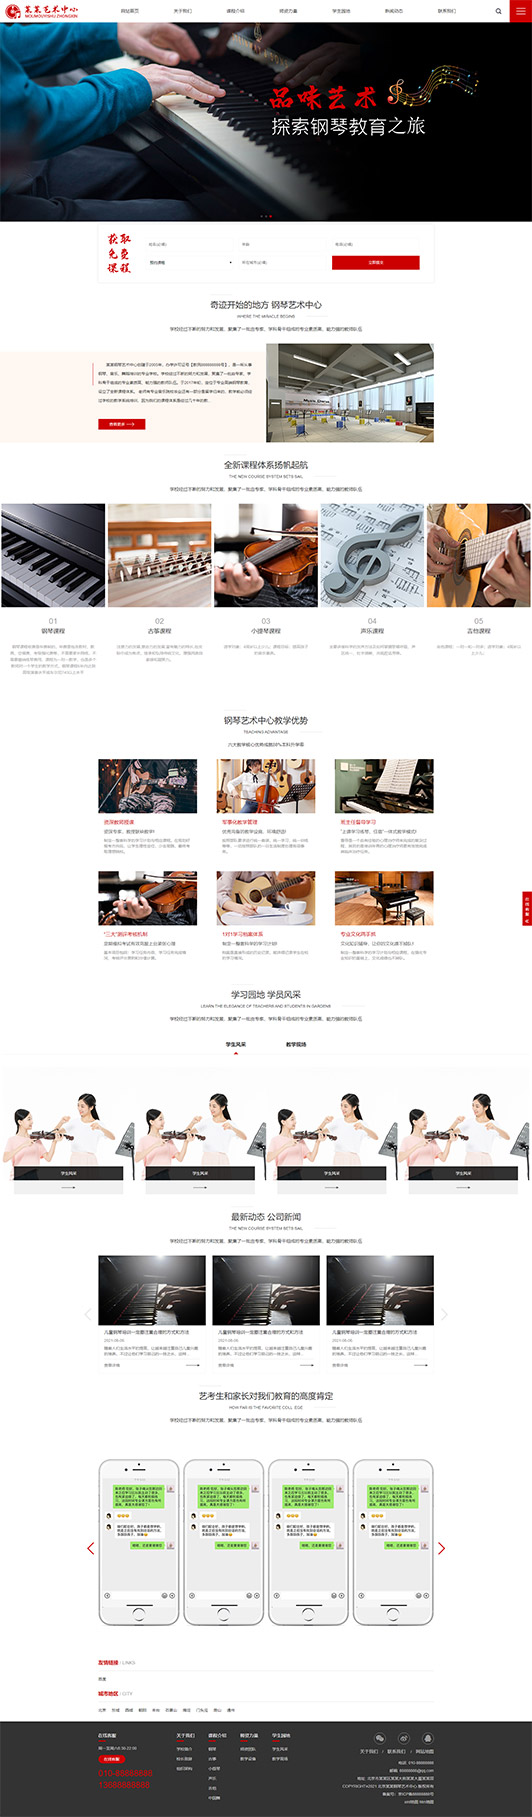 太原钢琴艺术培训公司响应式企业网站